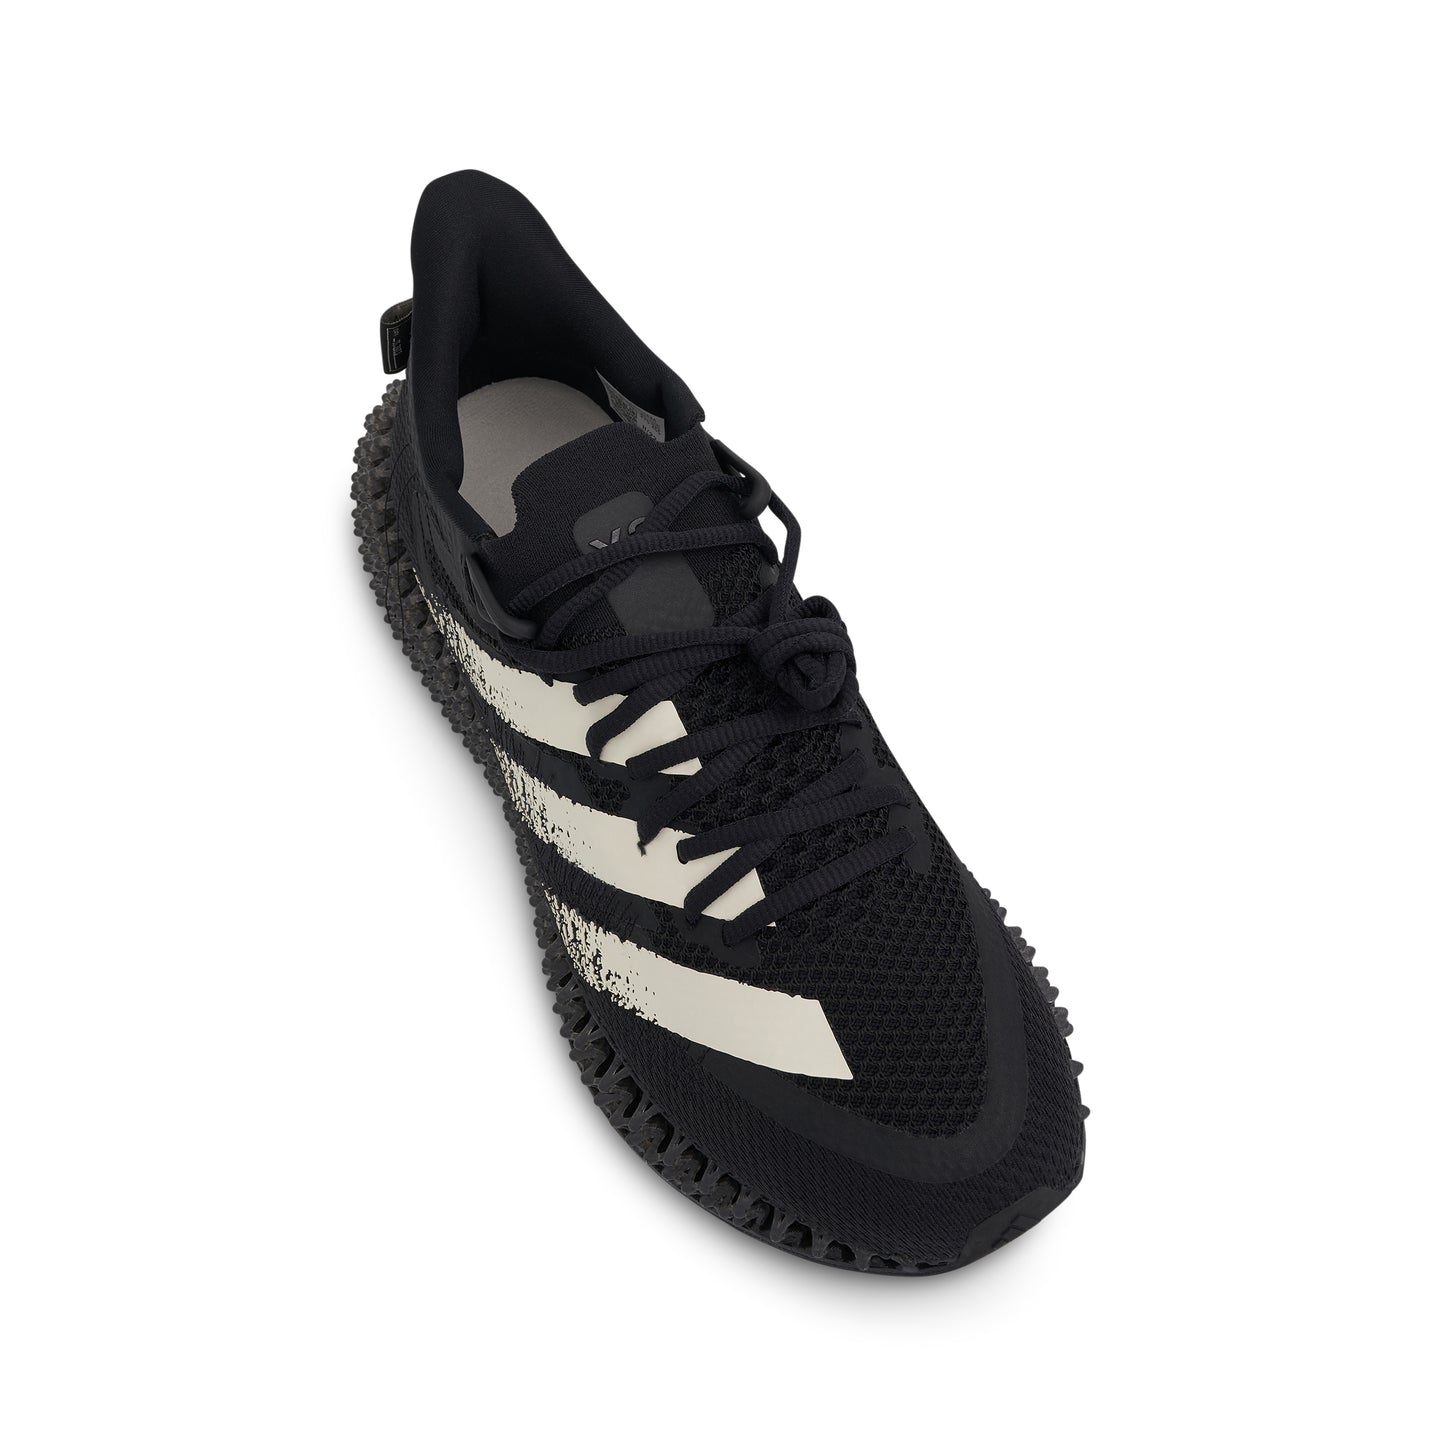 Runner 4D FWD Sneakers in Black/White